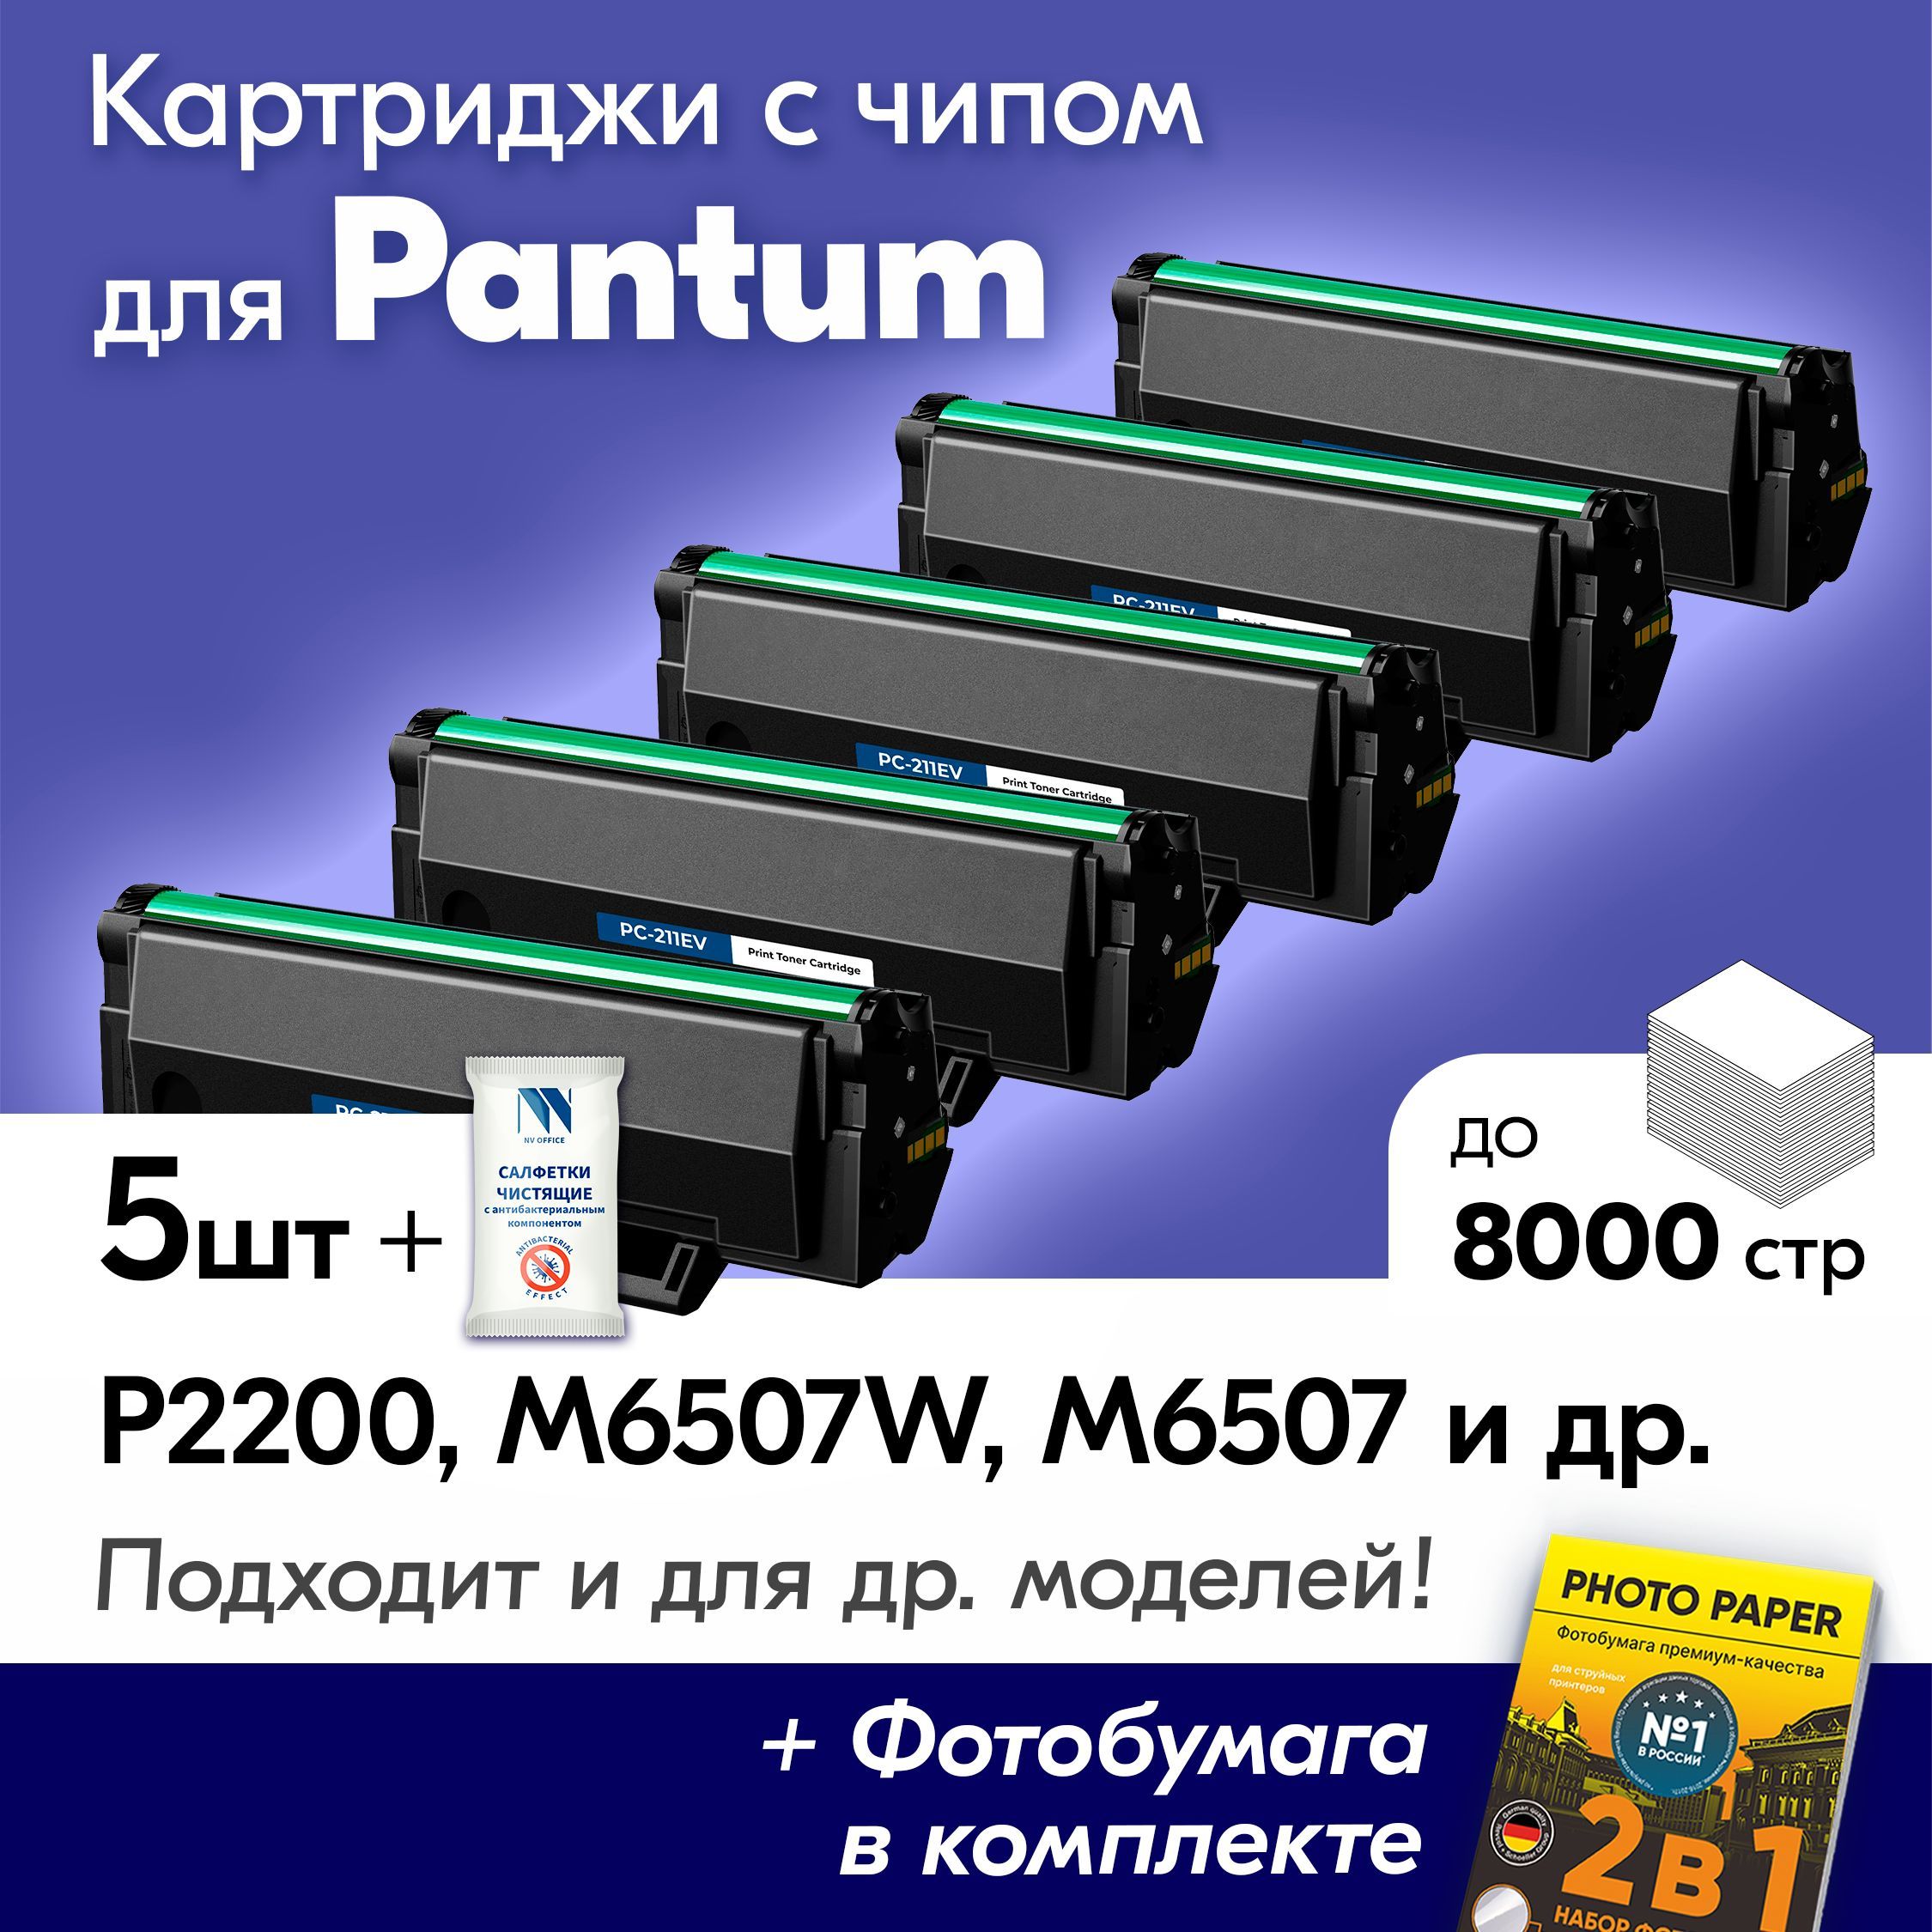 Pantum m6507w отзывы. Pantum p2500nw. Принтер лазерный Pantum p2502.